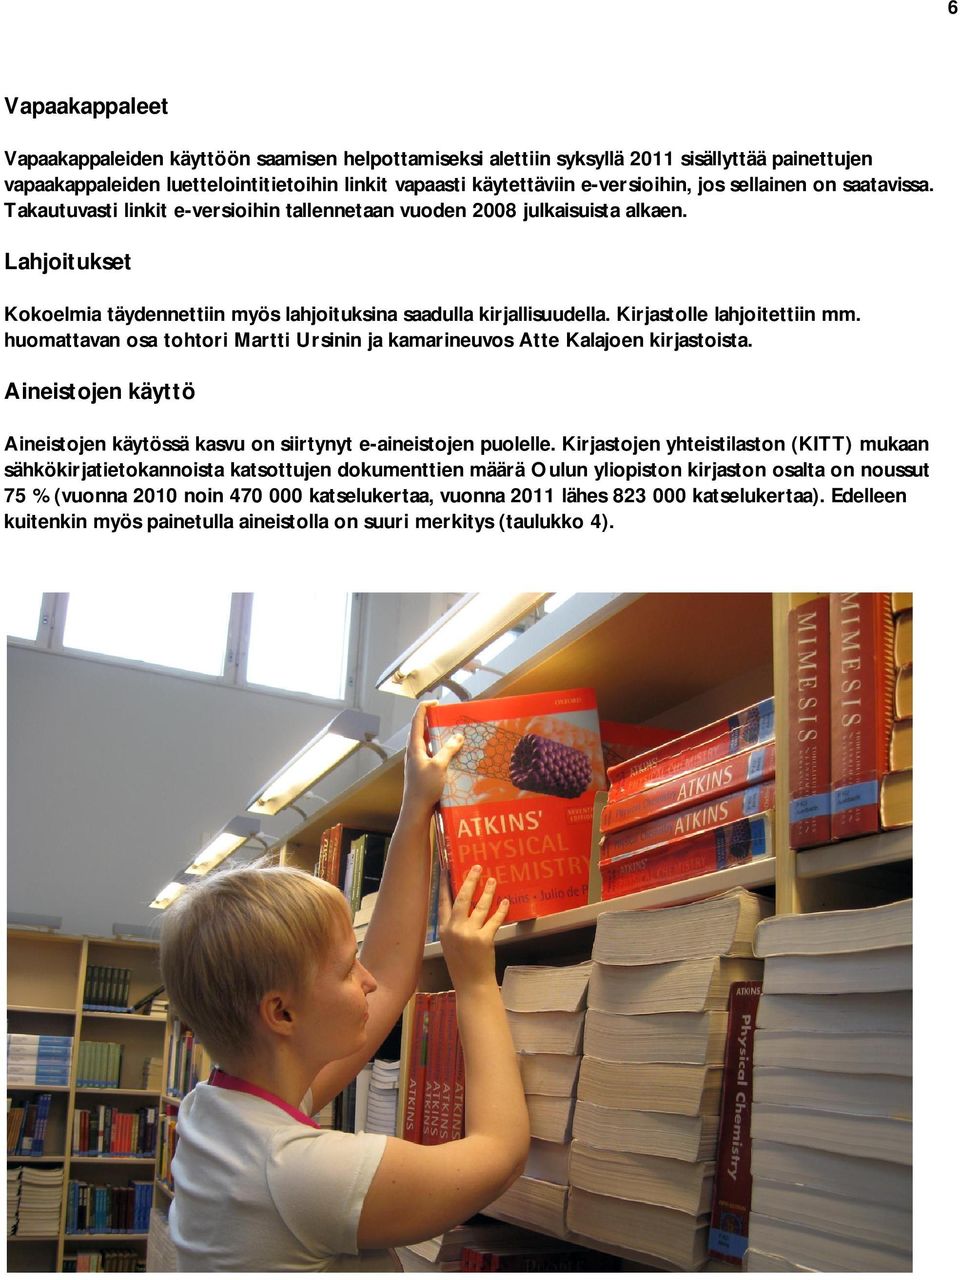 Kirjastolle lahjoitettiin mm. huomattavan osa tohtori Martti Ursinin ja kamarineuvos Atte Kalajoen kirjastoista. Aineistojen käyttö Aineistojen käytössä kasvu on siirtynyt e-aineistojen puolelle.